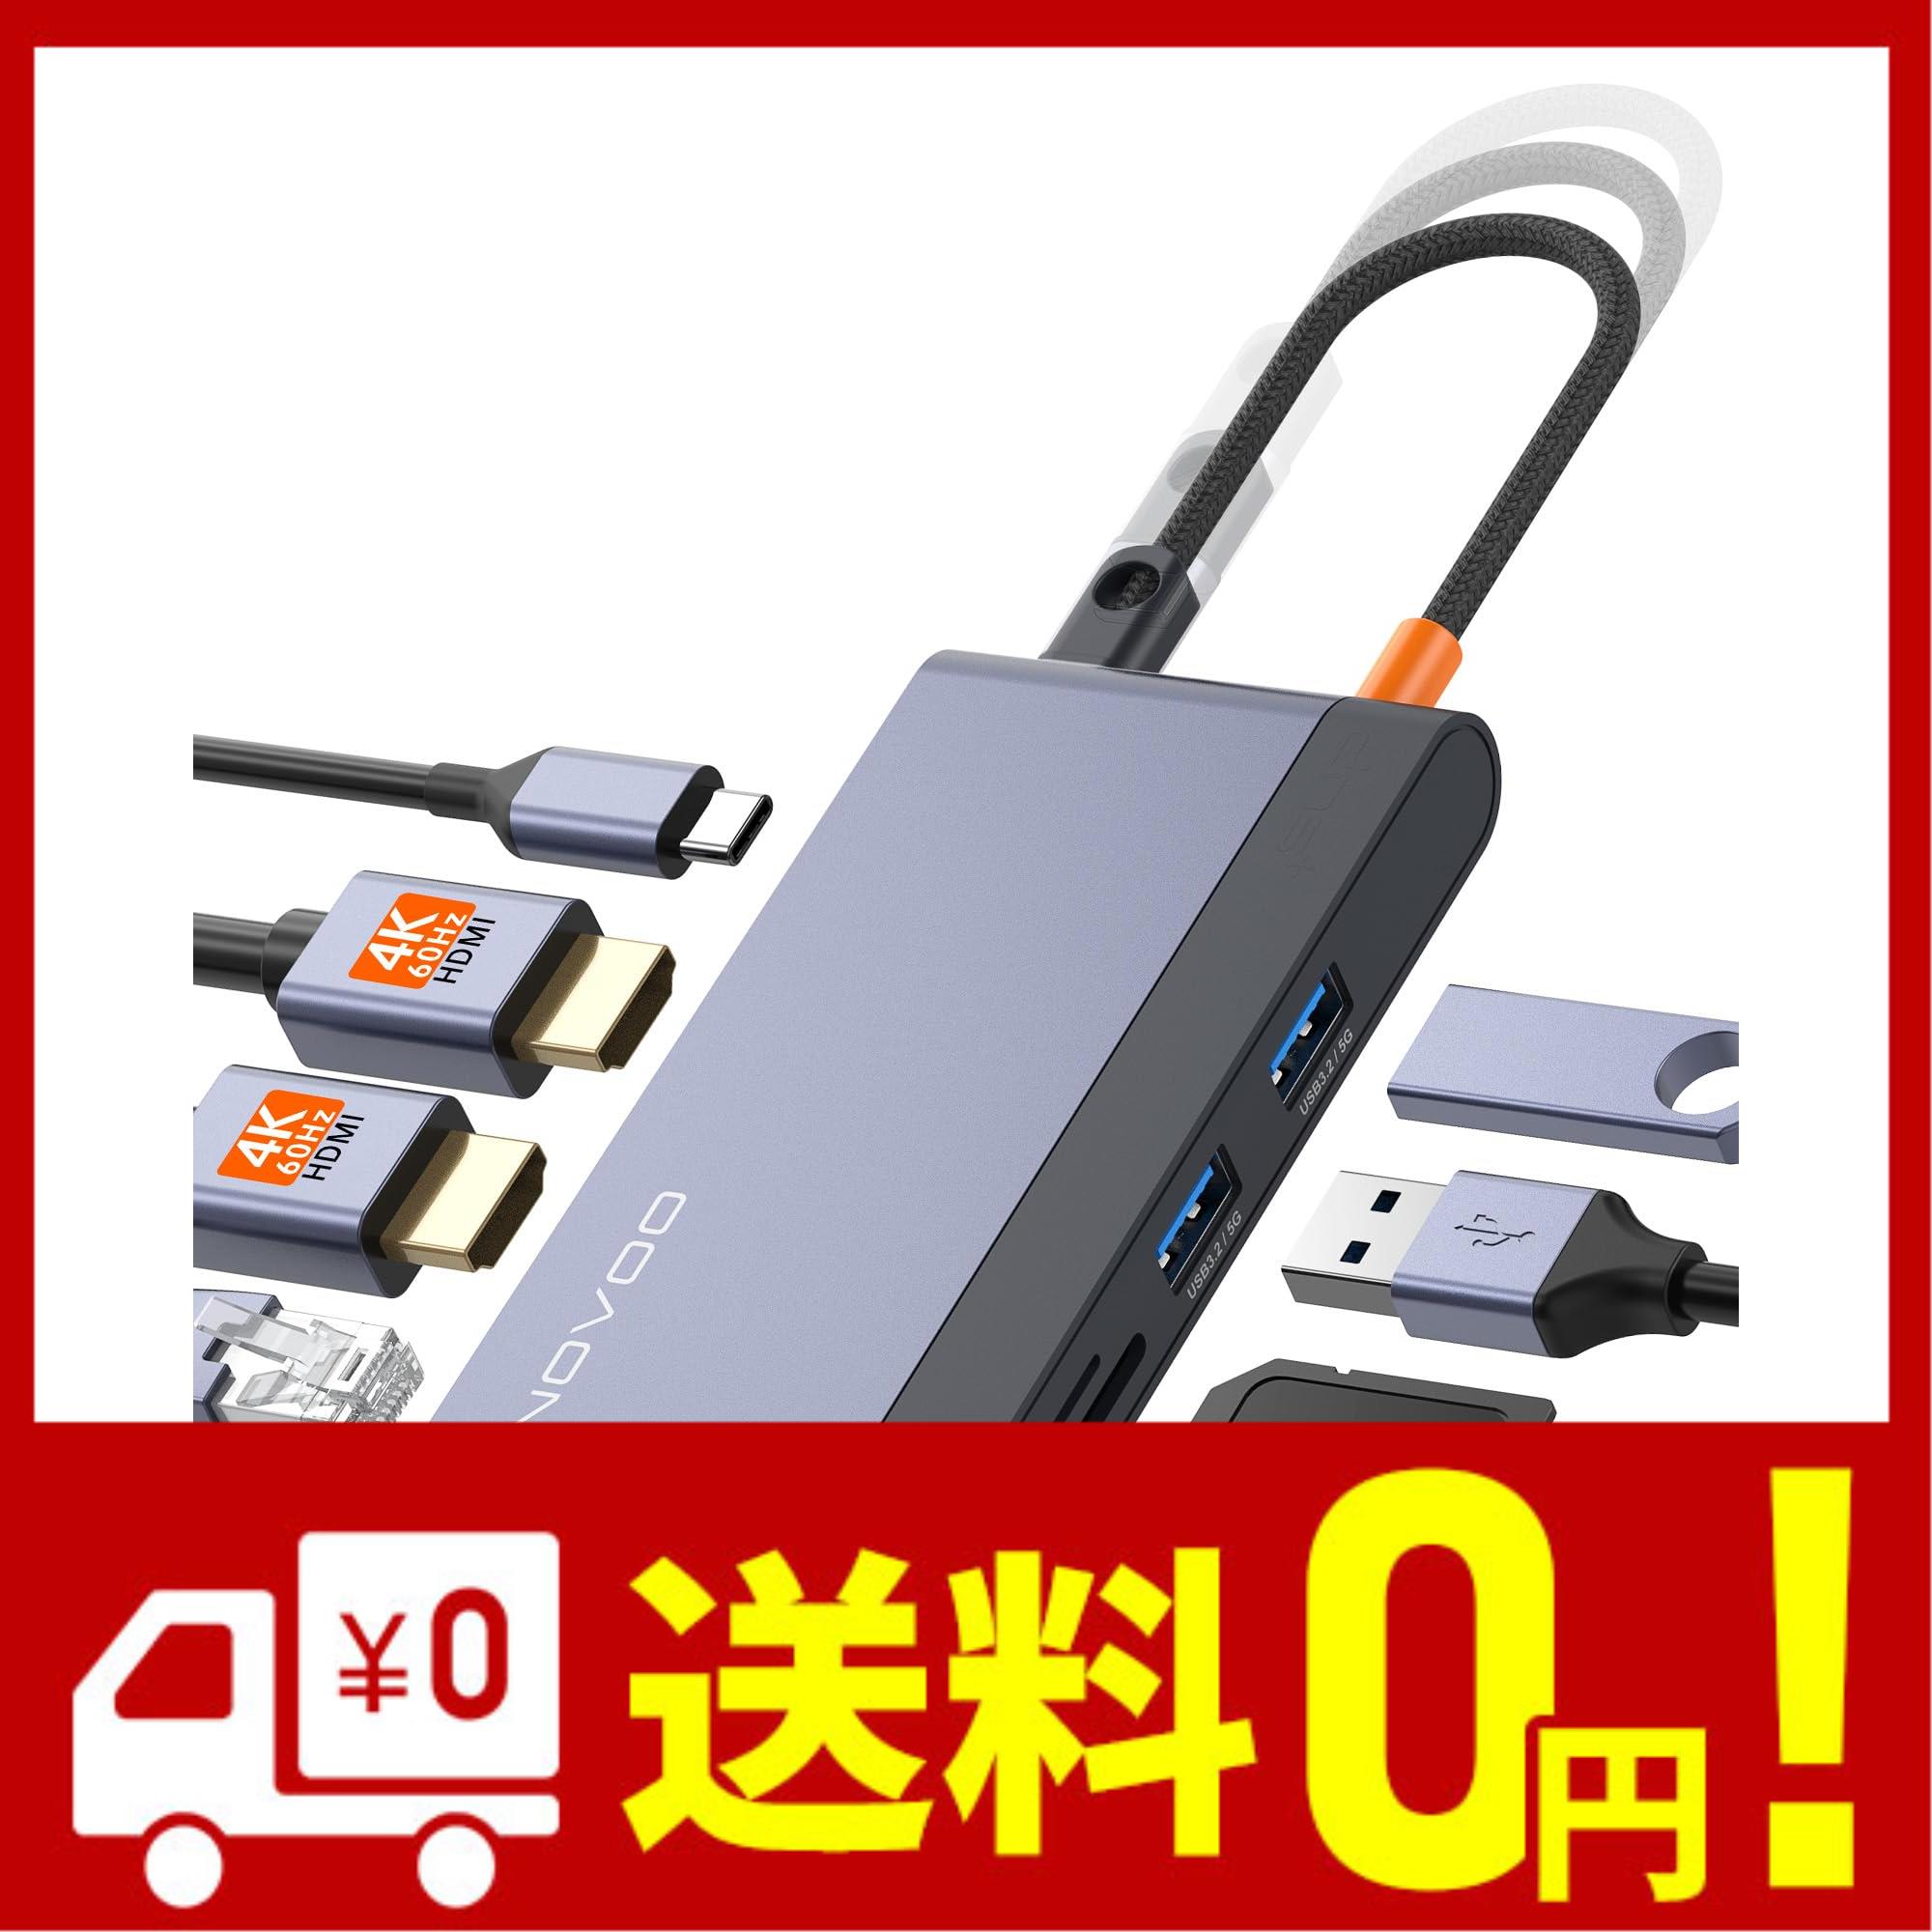 NOVOO 8in1 USB C ハブ デュアル 4K 60Hz タイプ C ハブ 2 4K 60Hz HDMI 1Gbps イーサネット 100W PD 急速充電 2 USB A 3.0 SD TFカード